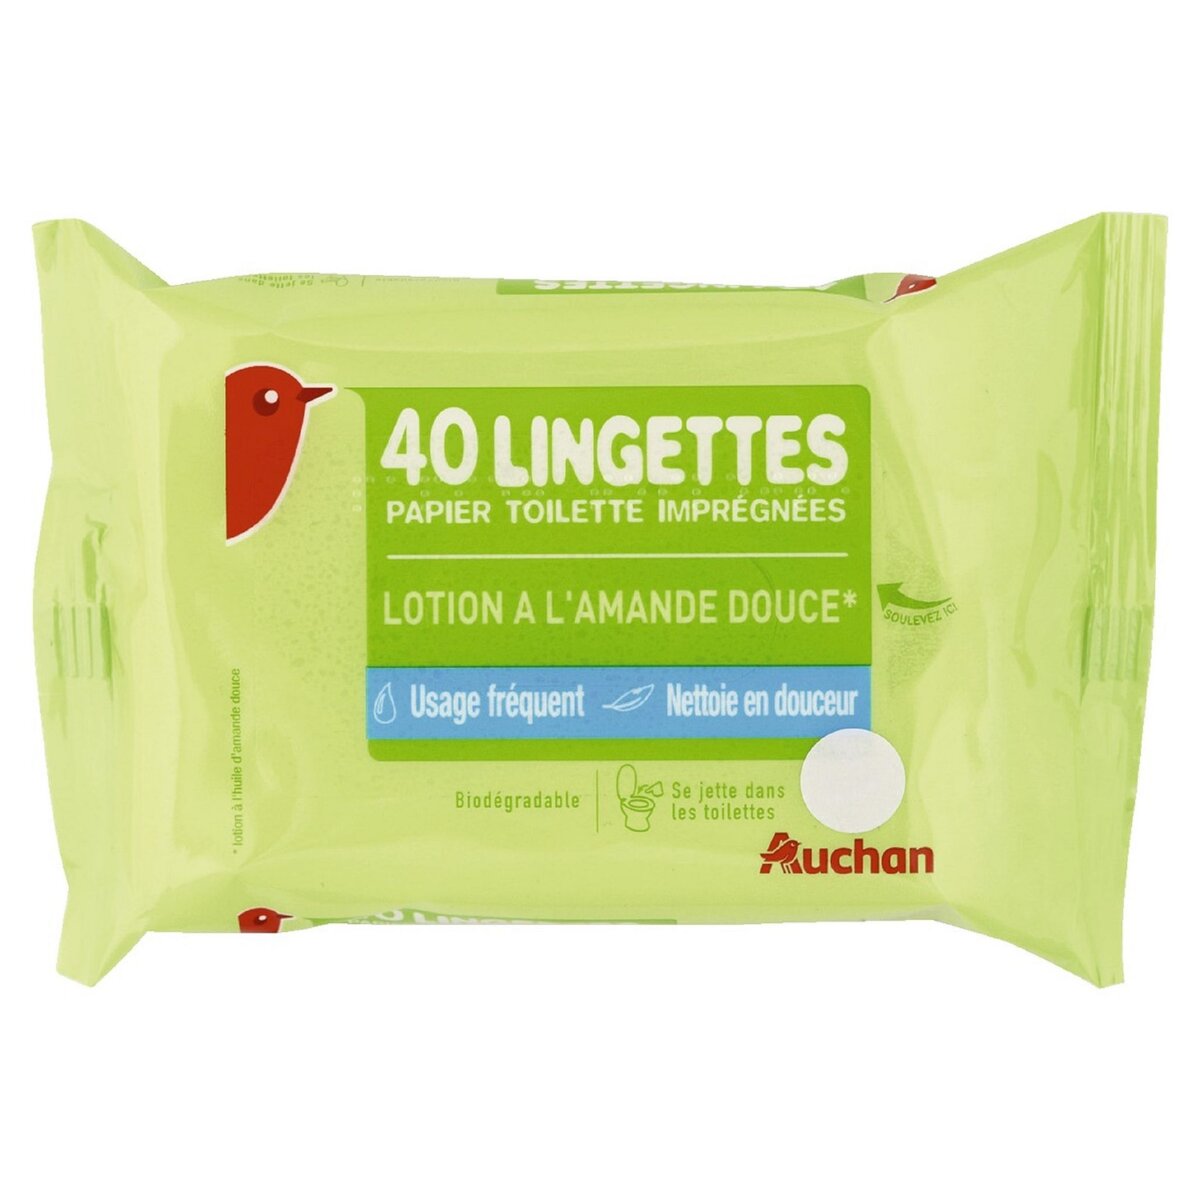 AUCHAN Lingettes papier toilette biodégradable amande douce 40 lingettes